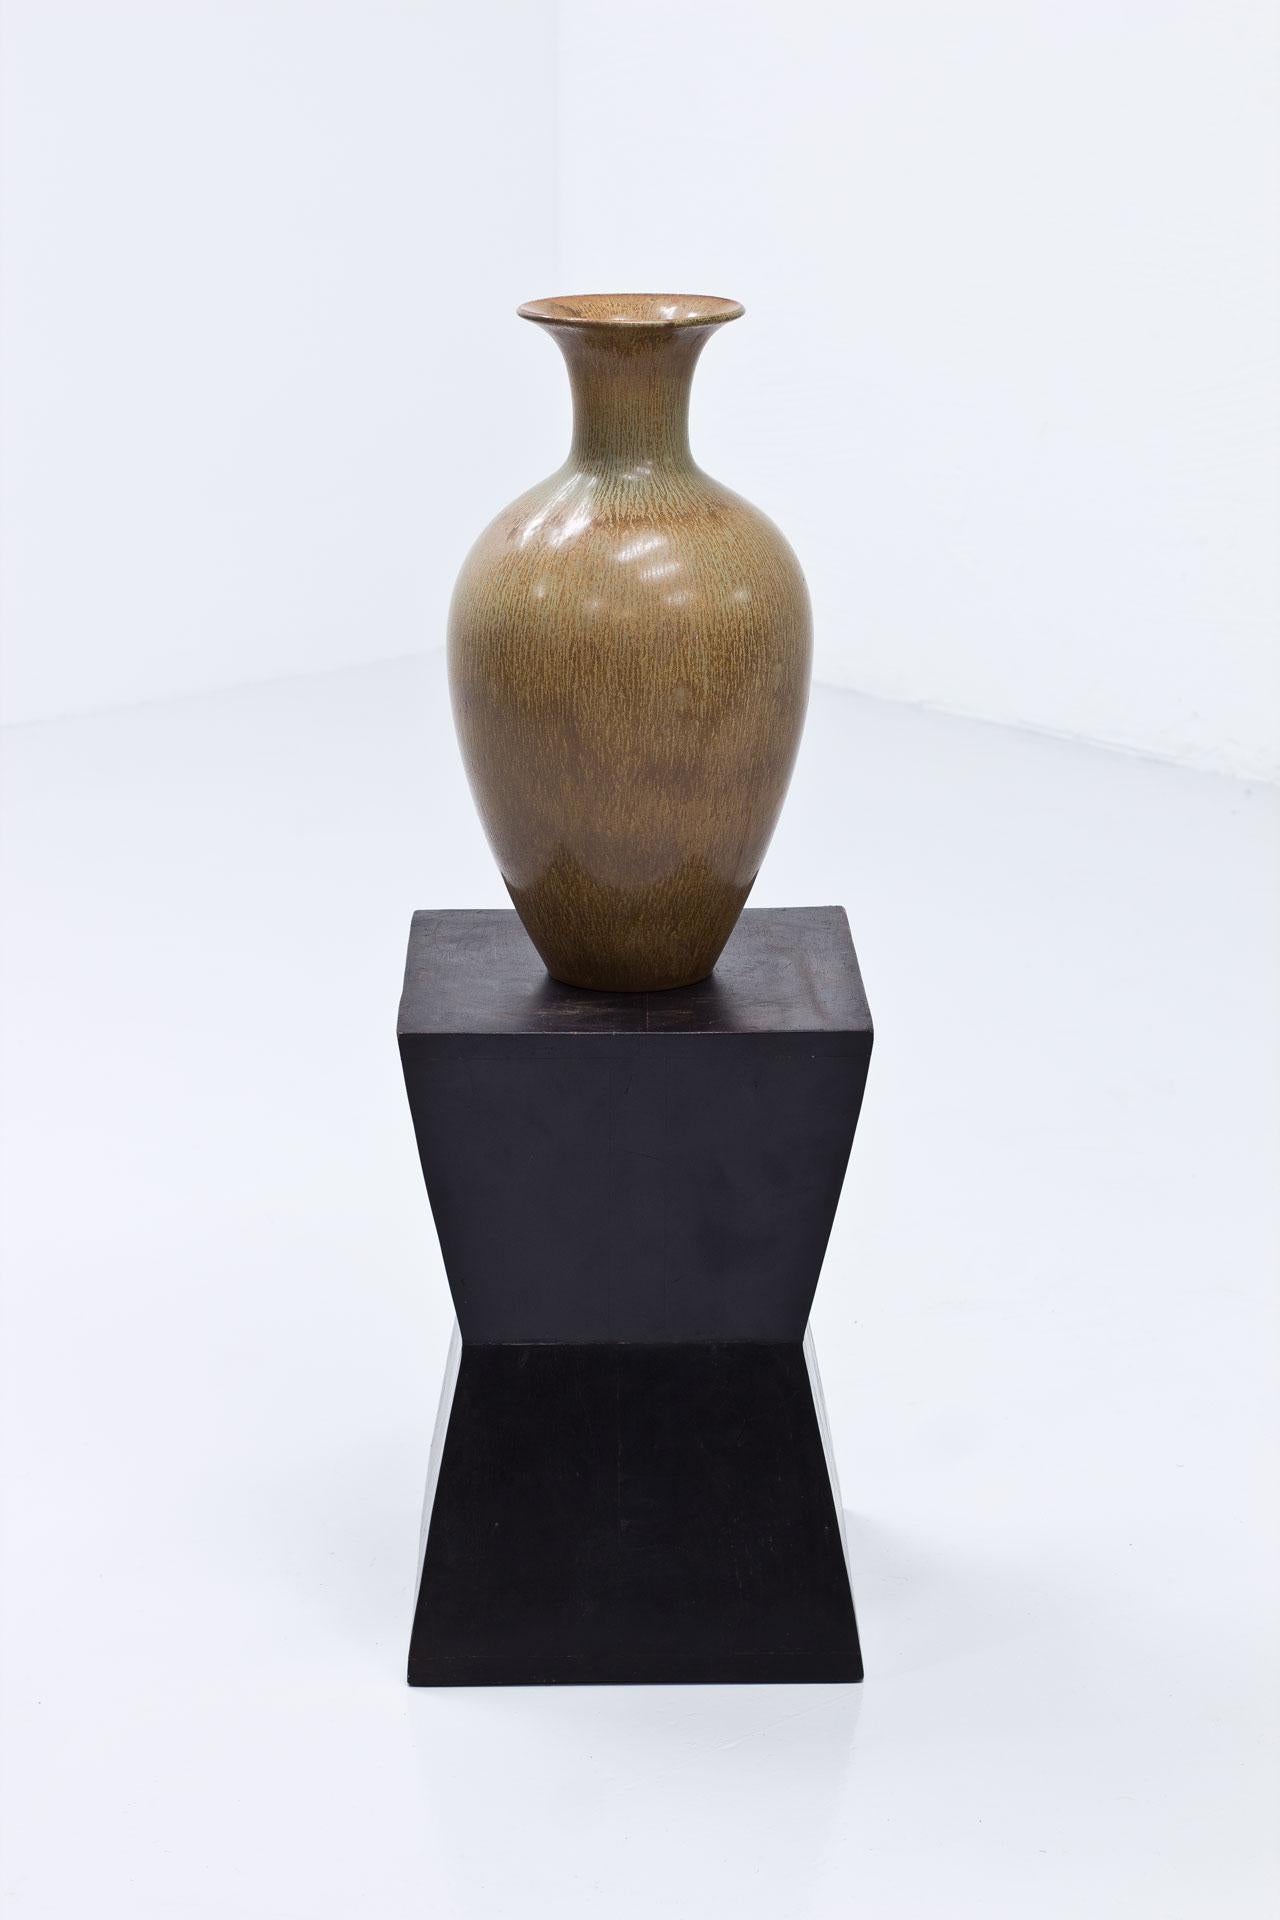 Vase de sol intemporel en céramique conçu par Gunnar Nylund. Fabriqué par Rörstrand en Suède dans les années 1950. Le vase est fabriqué en grès avec une glaçure au poil de lièvre oscillant entre le brun clair et le vert.
Bon état, deuxième tri avec